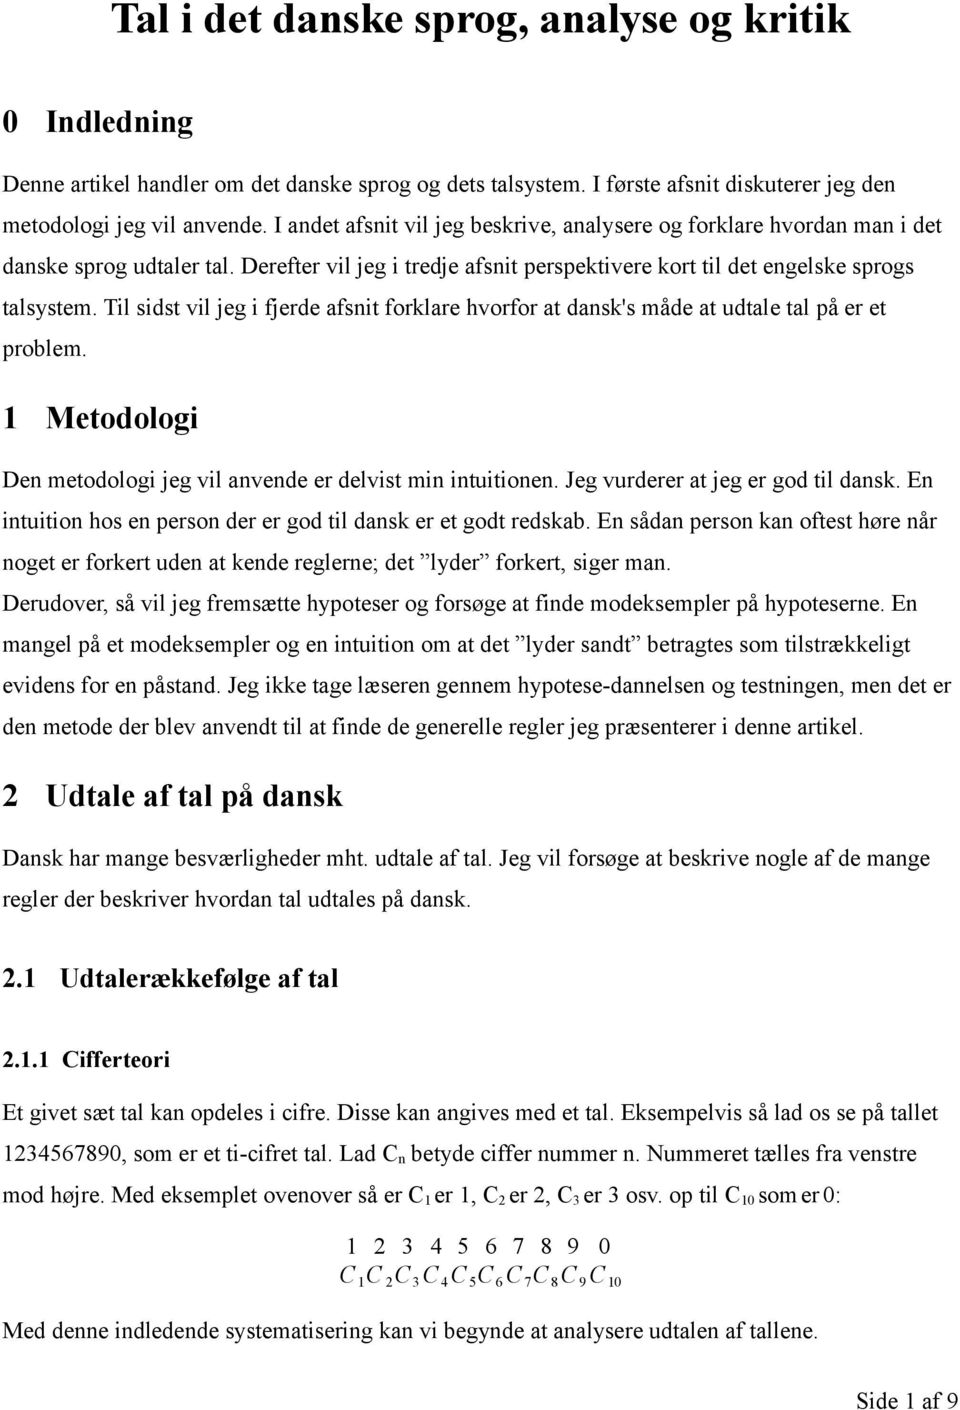 Til sidst vil jeg i fjerde afsnit forklare hvorfor at dansk's måde at udtale tal på er et problem. 1 Metodologi Den metodologi jeg vil anvende er delvist min intuitionen.